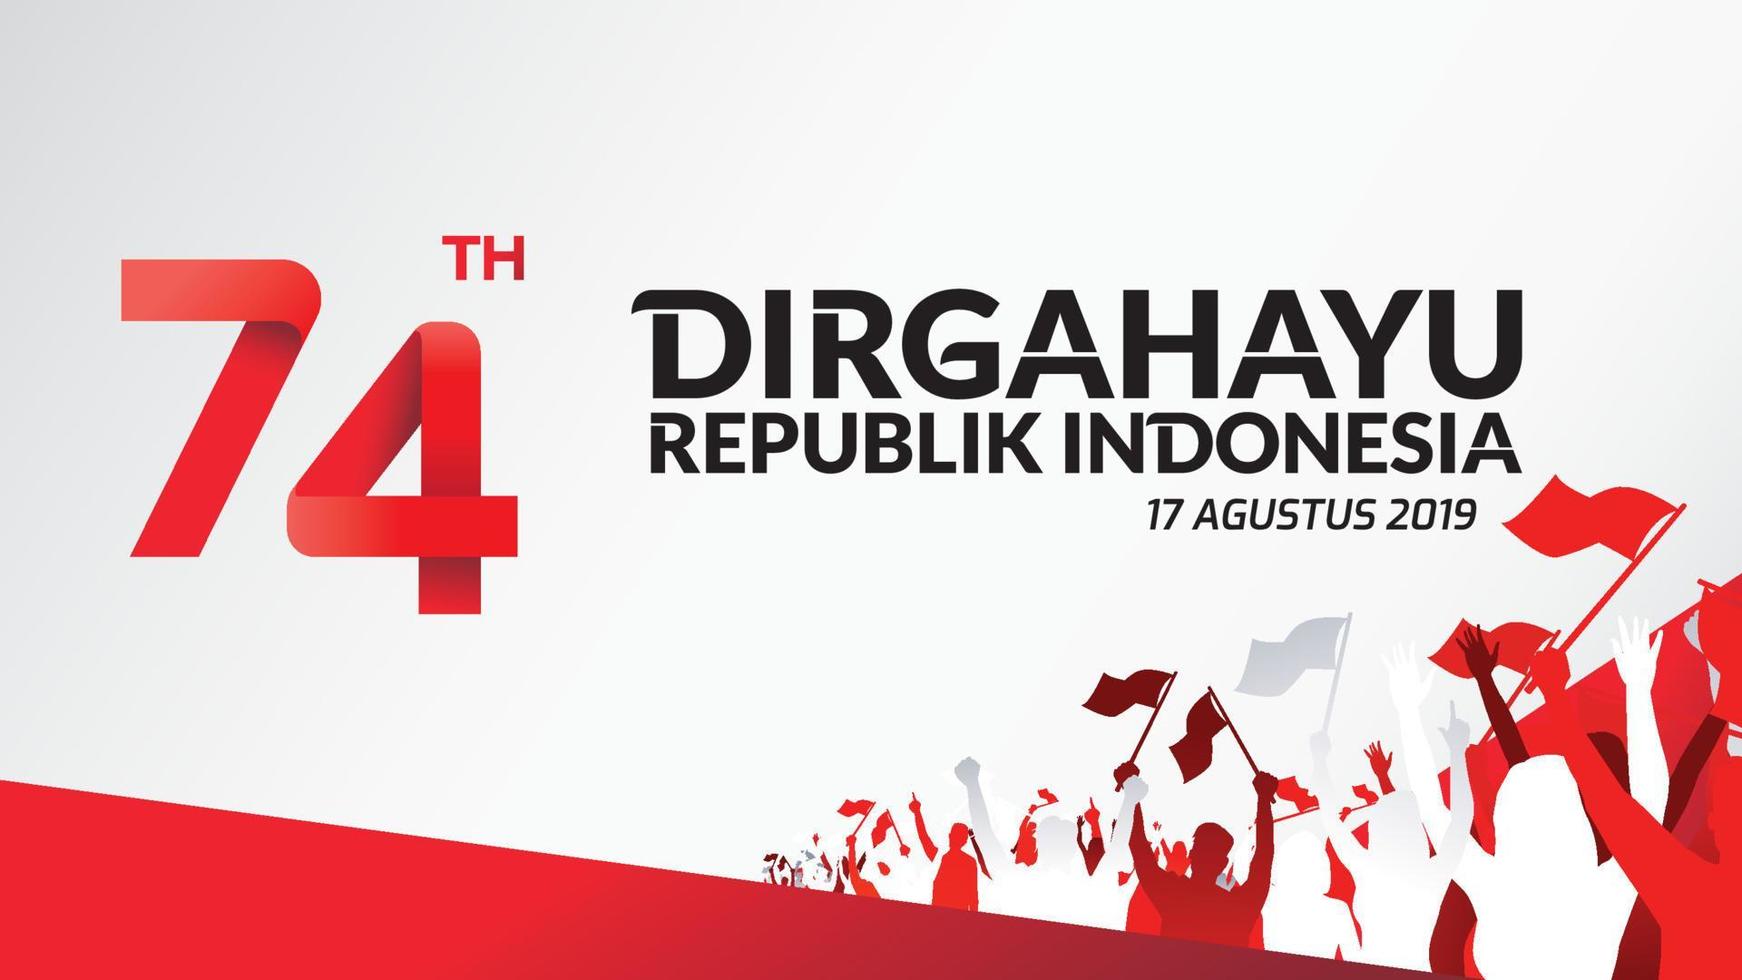 17 de agosto. indonésia feliz dia da independência cartão, banner e logotipo de fundo de textura. - vetor